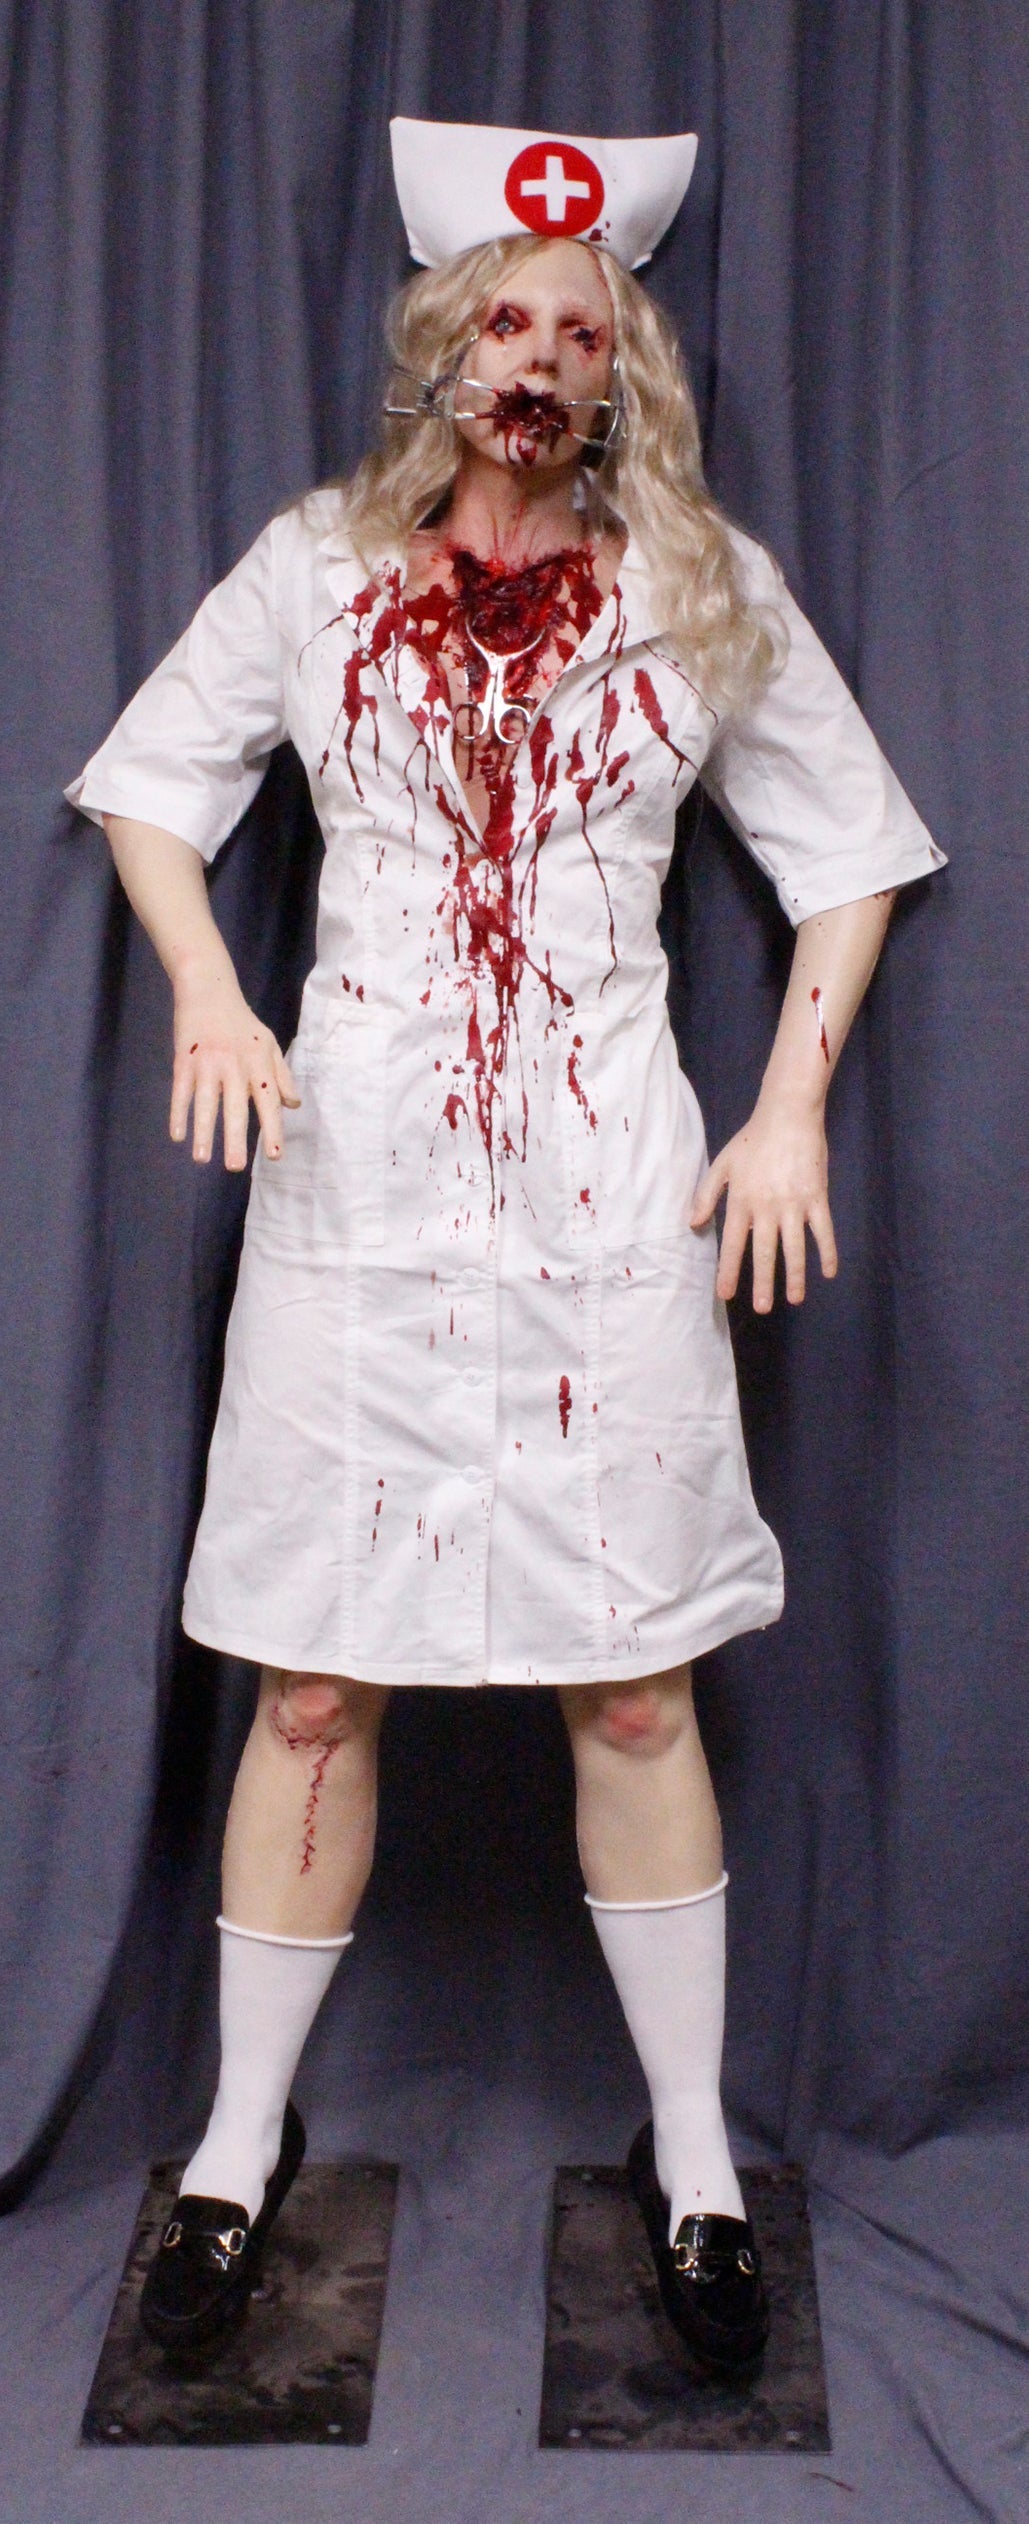 Nurse Ratchet Standing Body Prop – Dapper Cadaver Props